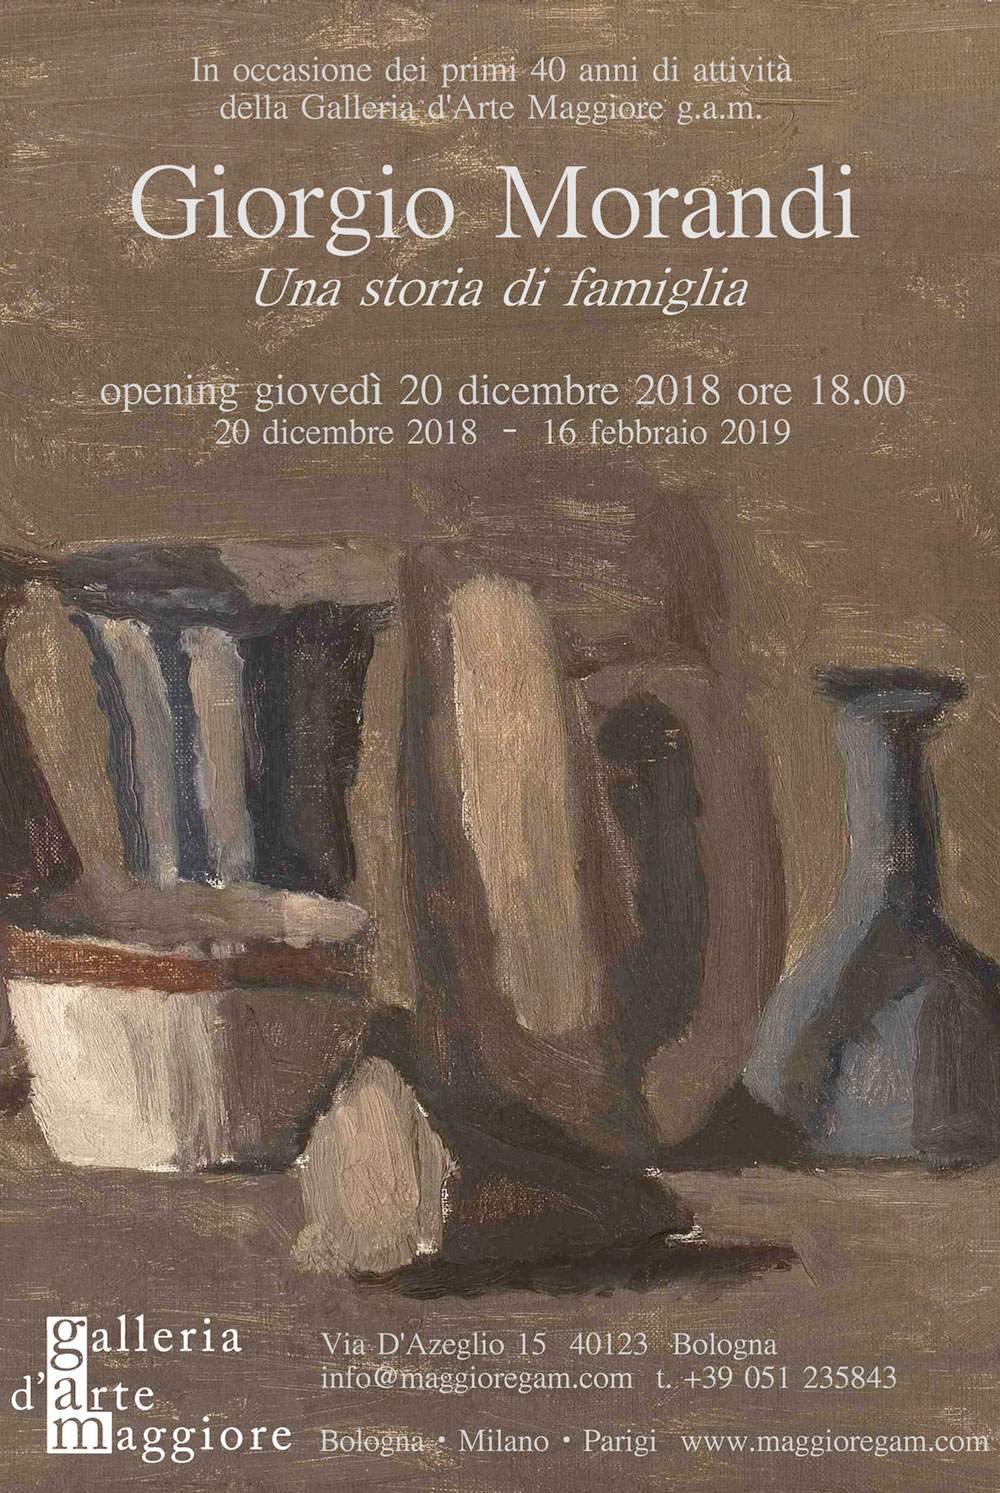  Bologna hosts a major retrospective dedicated to Giorgio Morandi